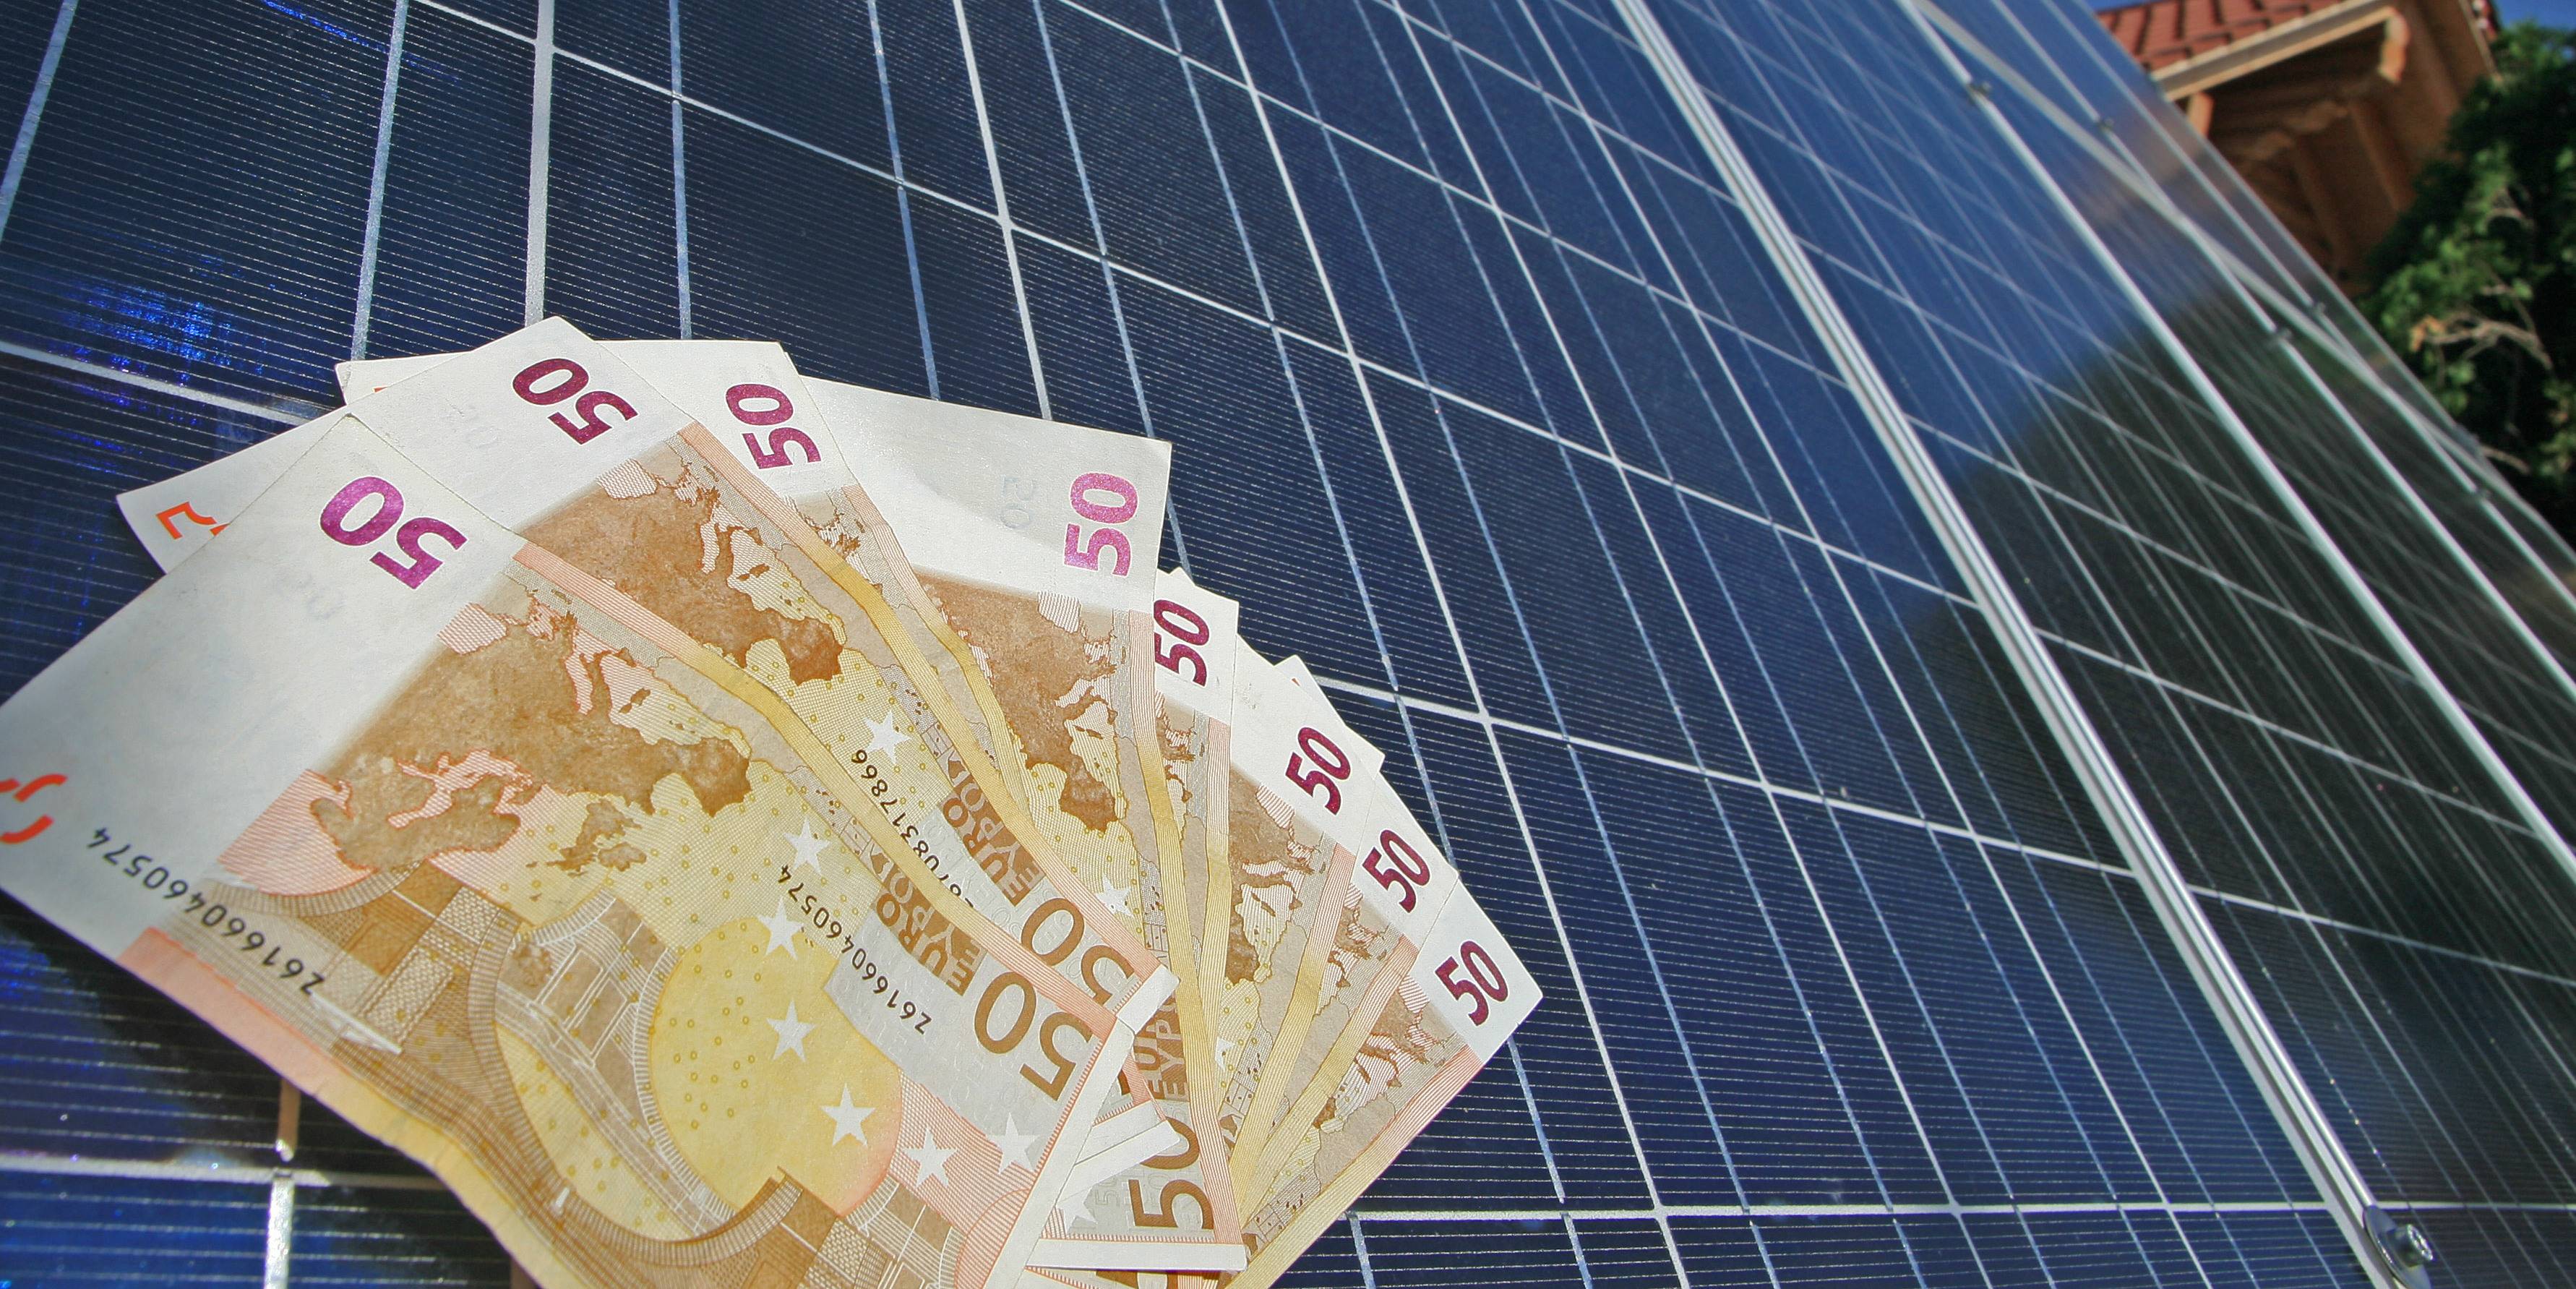 Solaranlage für Einfamilienhaus: Kosten und wichtige Tipps!